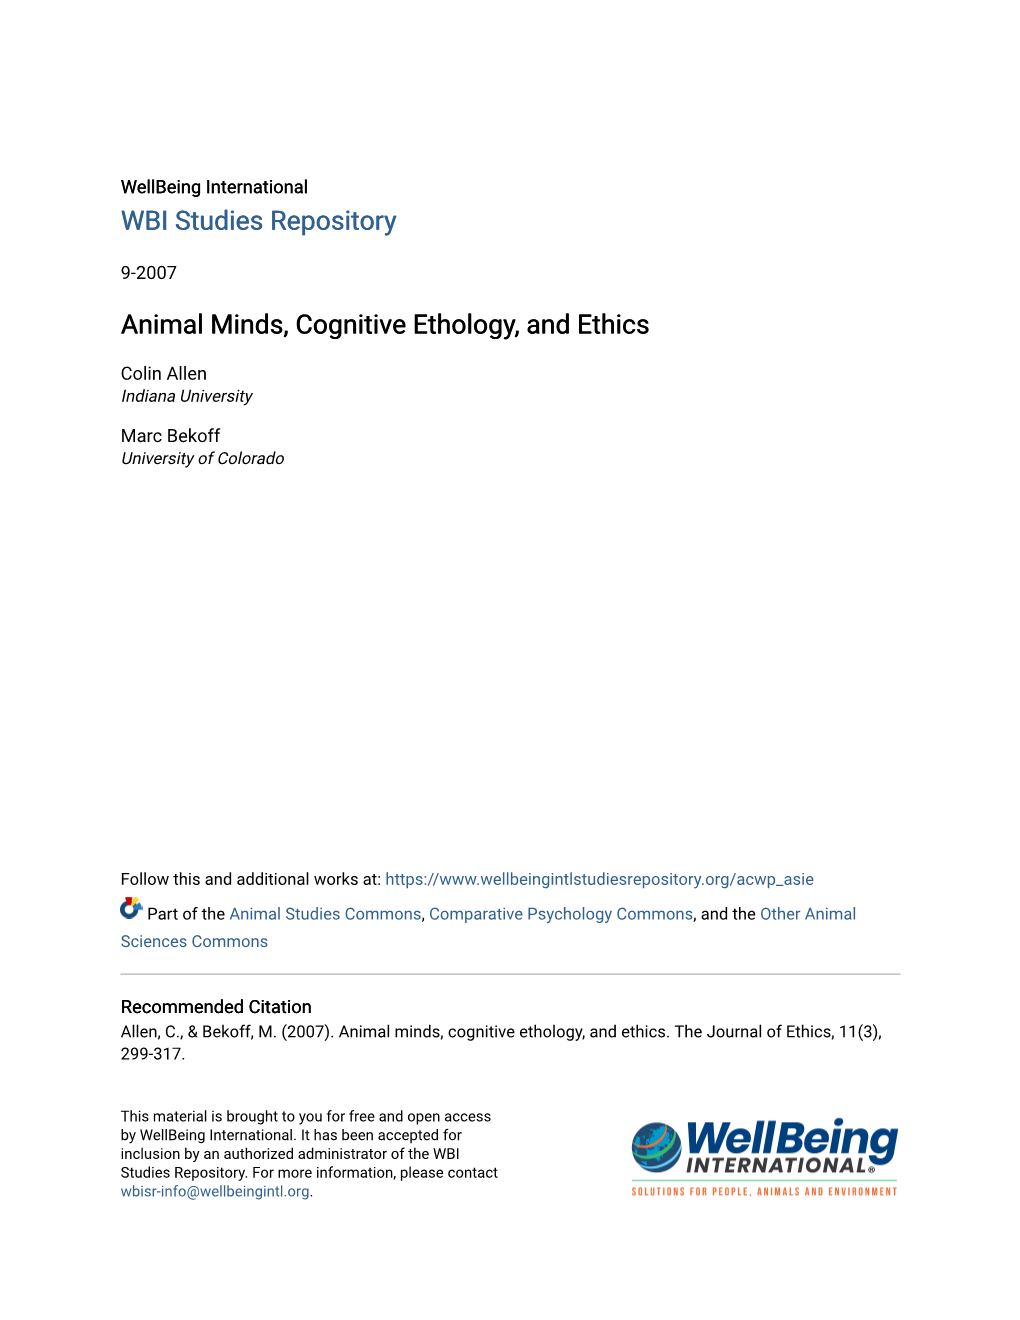 Animal Minds, Cognitive Ethology, and Ethics